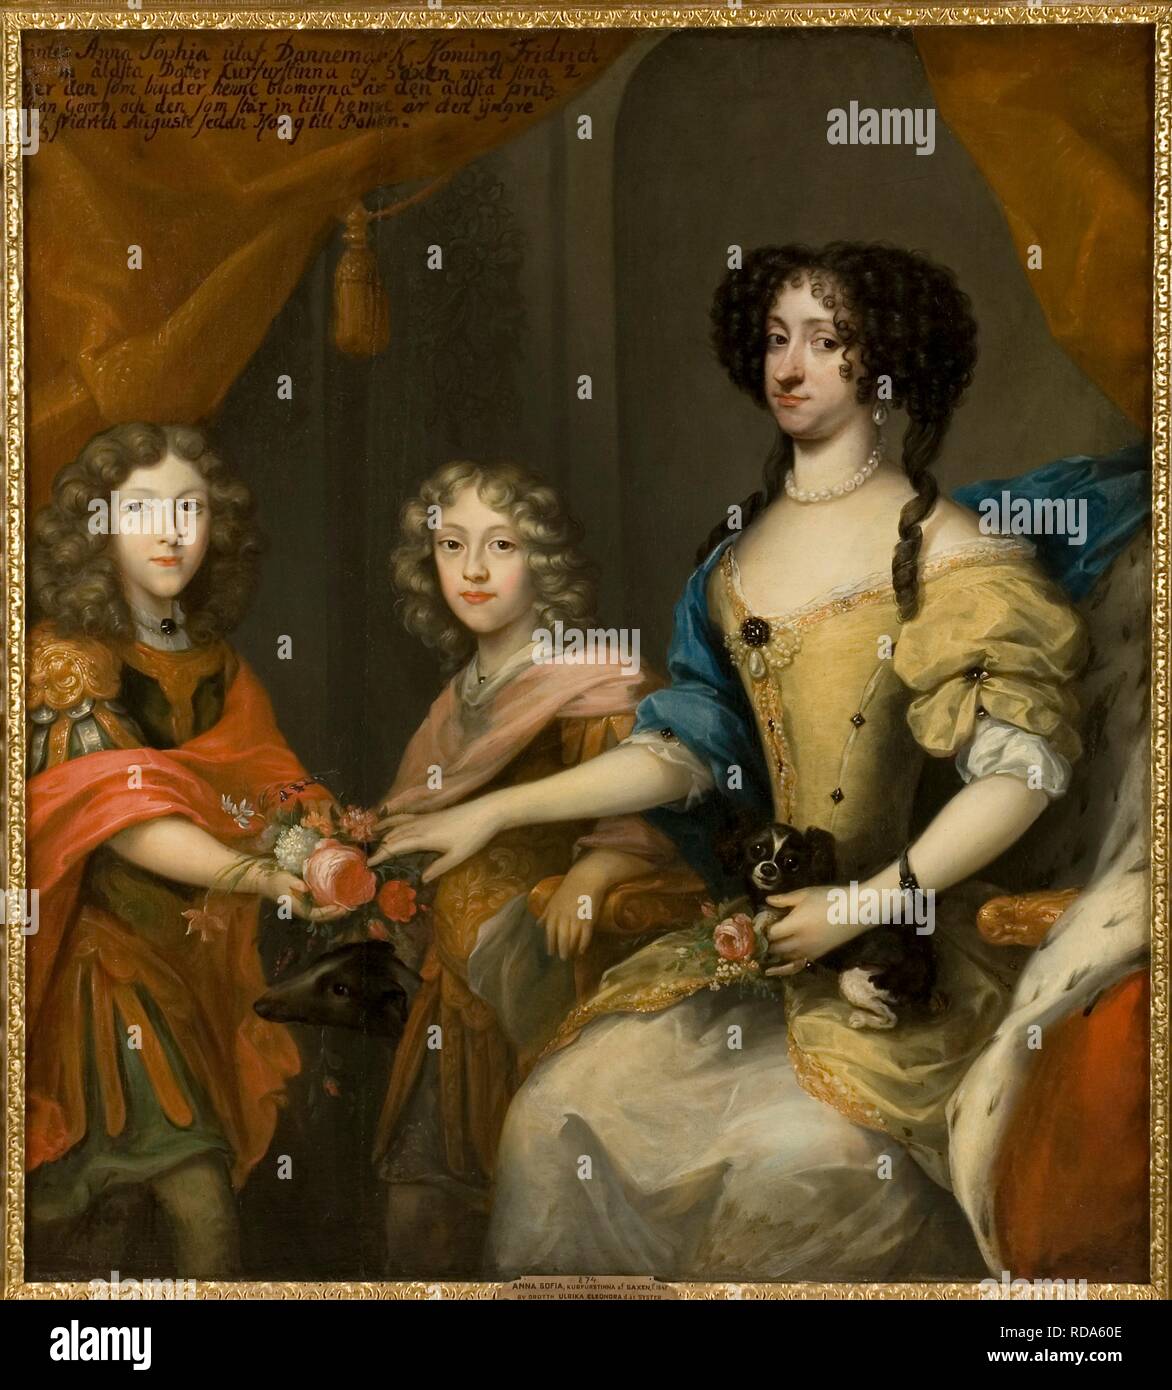 Anna Sophie de Dinamarca (1647-1717), Electress de Sajonia con hijos John George y Frederick Augustus. Museo: Nationalmuseum de Estocolmo. Autor: Krafft, David von. Foto de stock